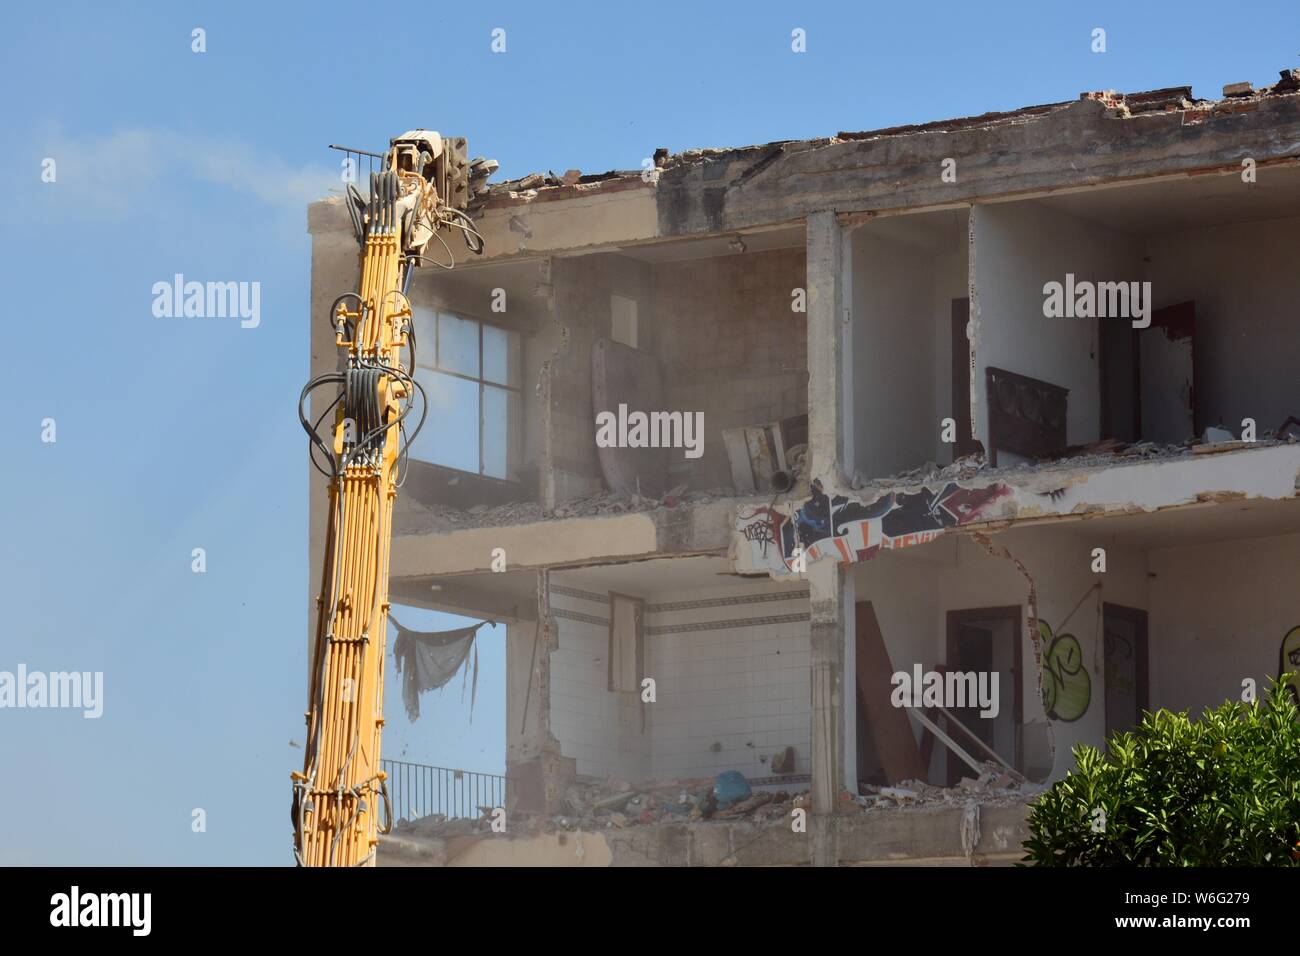 Gran máquina demoliendo un viejo edificio de apartamentos Stock Photo